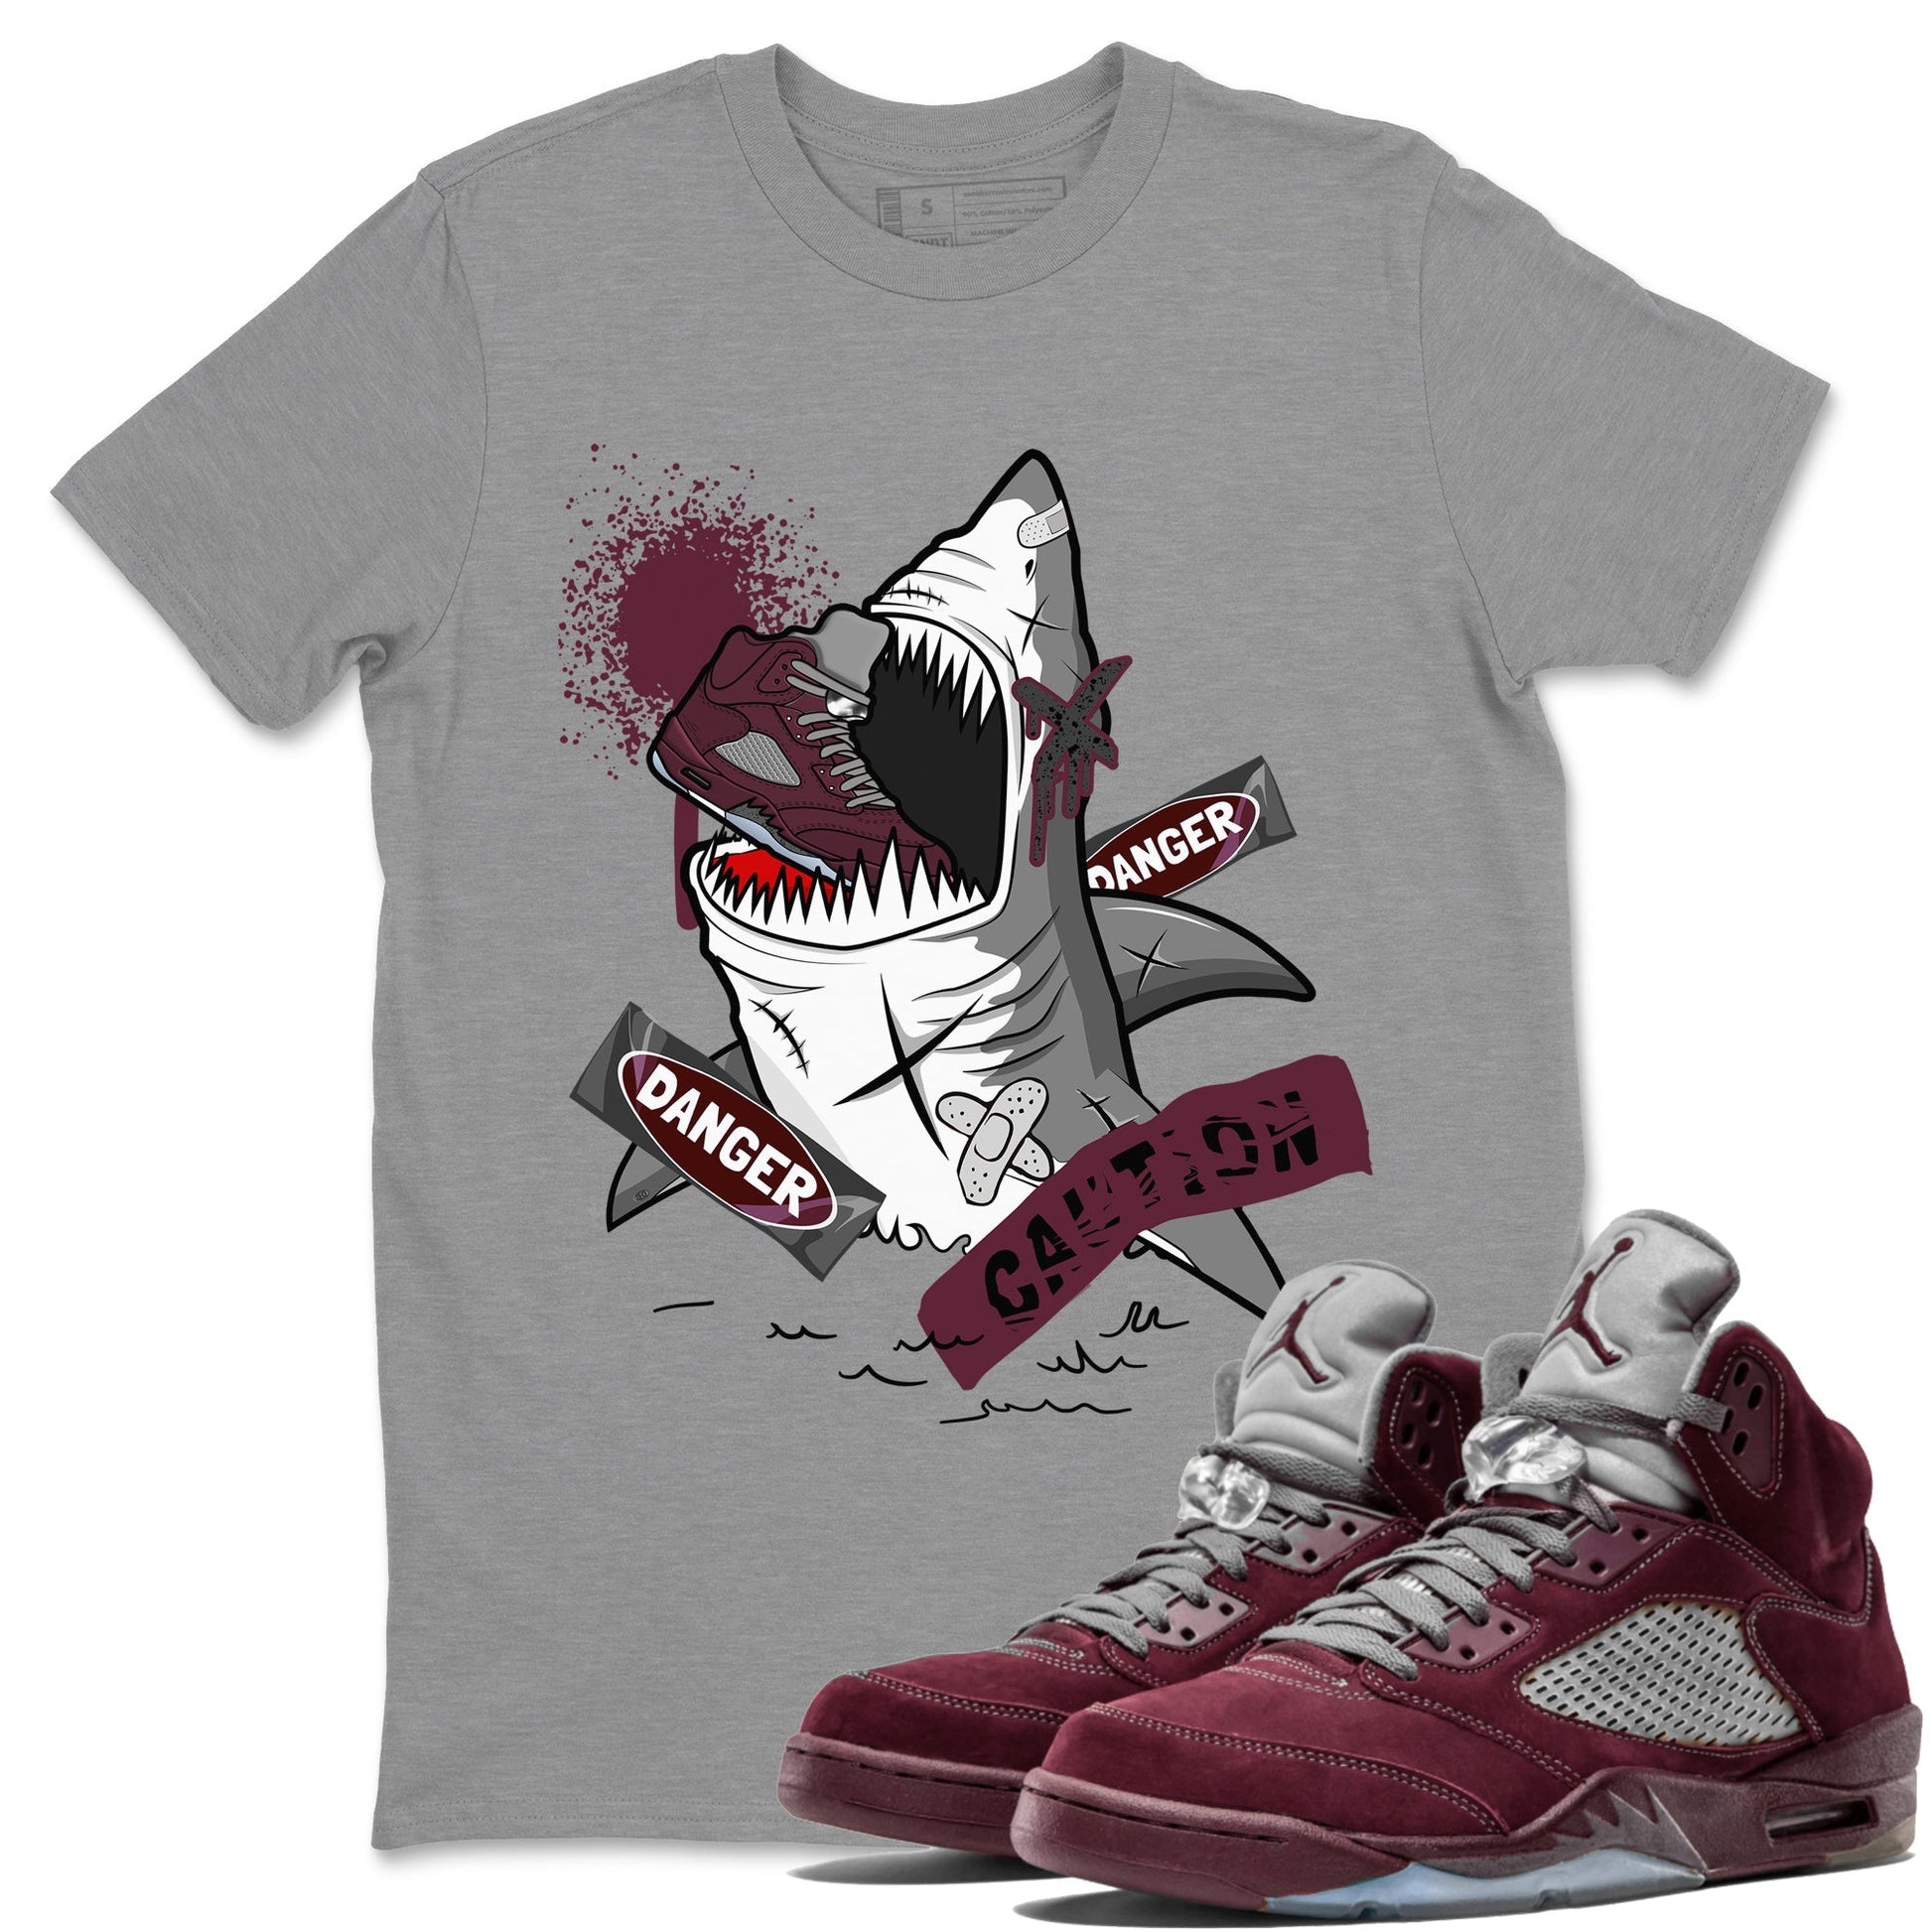 5s Burgundy shirt to match jordans Dangerous Shark Streetwear Sneaker Shirt Air Jordan 5 Burgundy Drip Gear Zone Sneaker Matching Clothing Unisex Heather Grey 1 T-Shirt